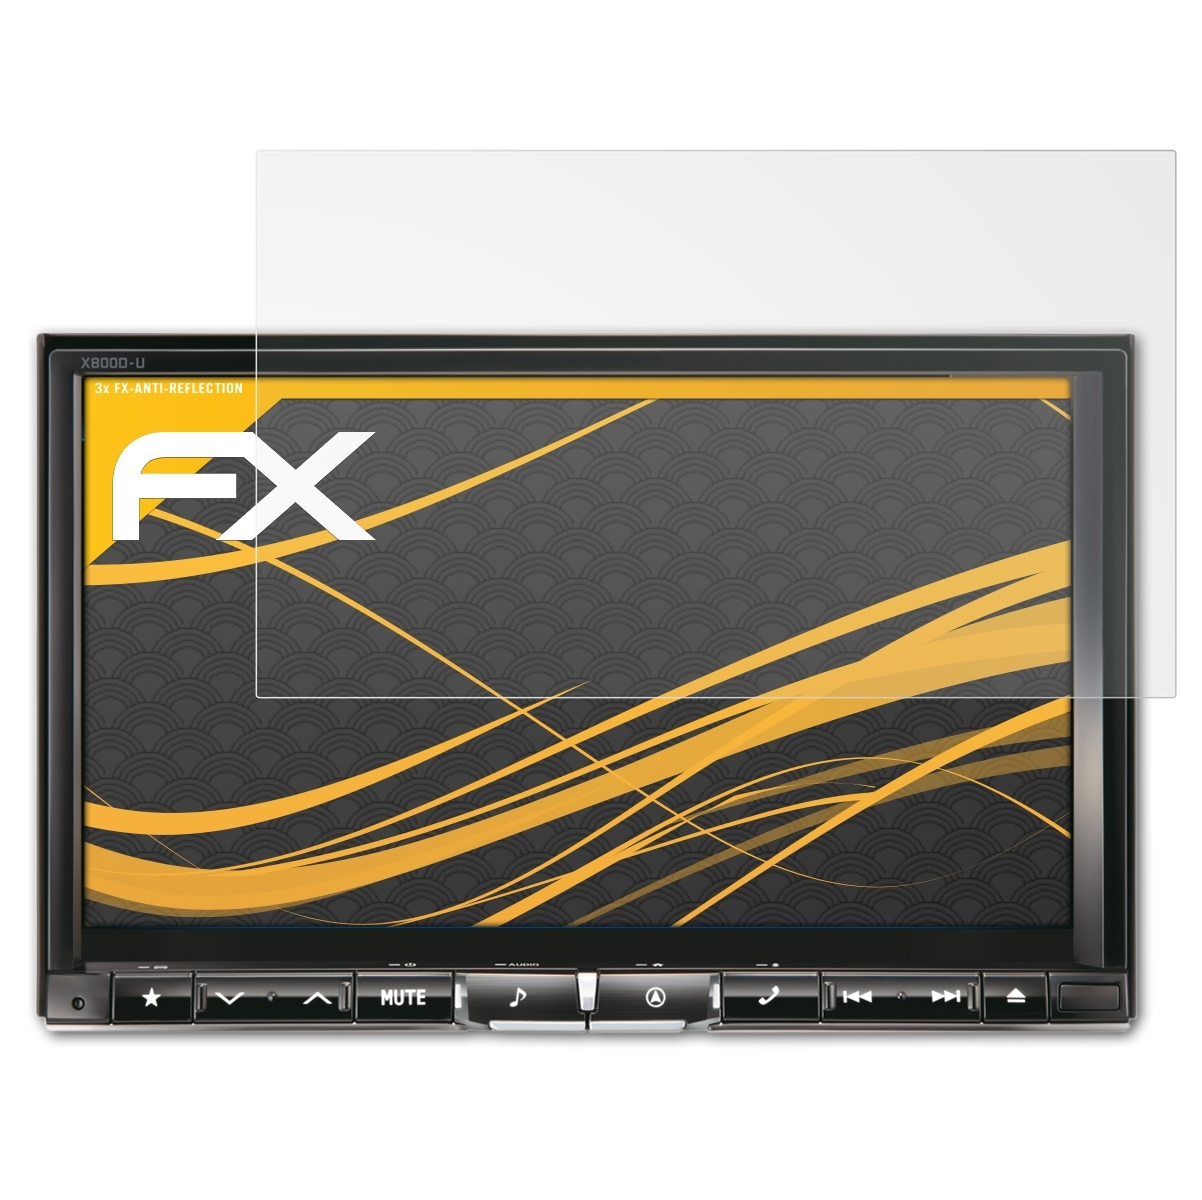 Alpine ATFOLIX FX-Antireflex X800D-U) Displayschutz(für 3x